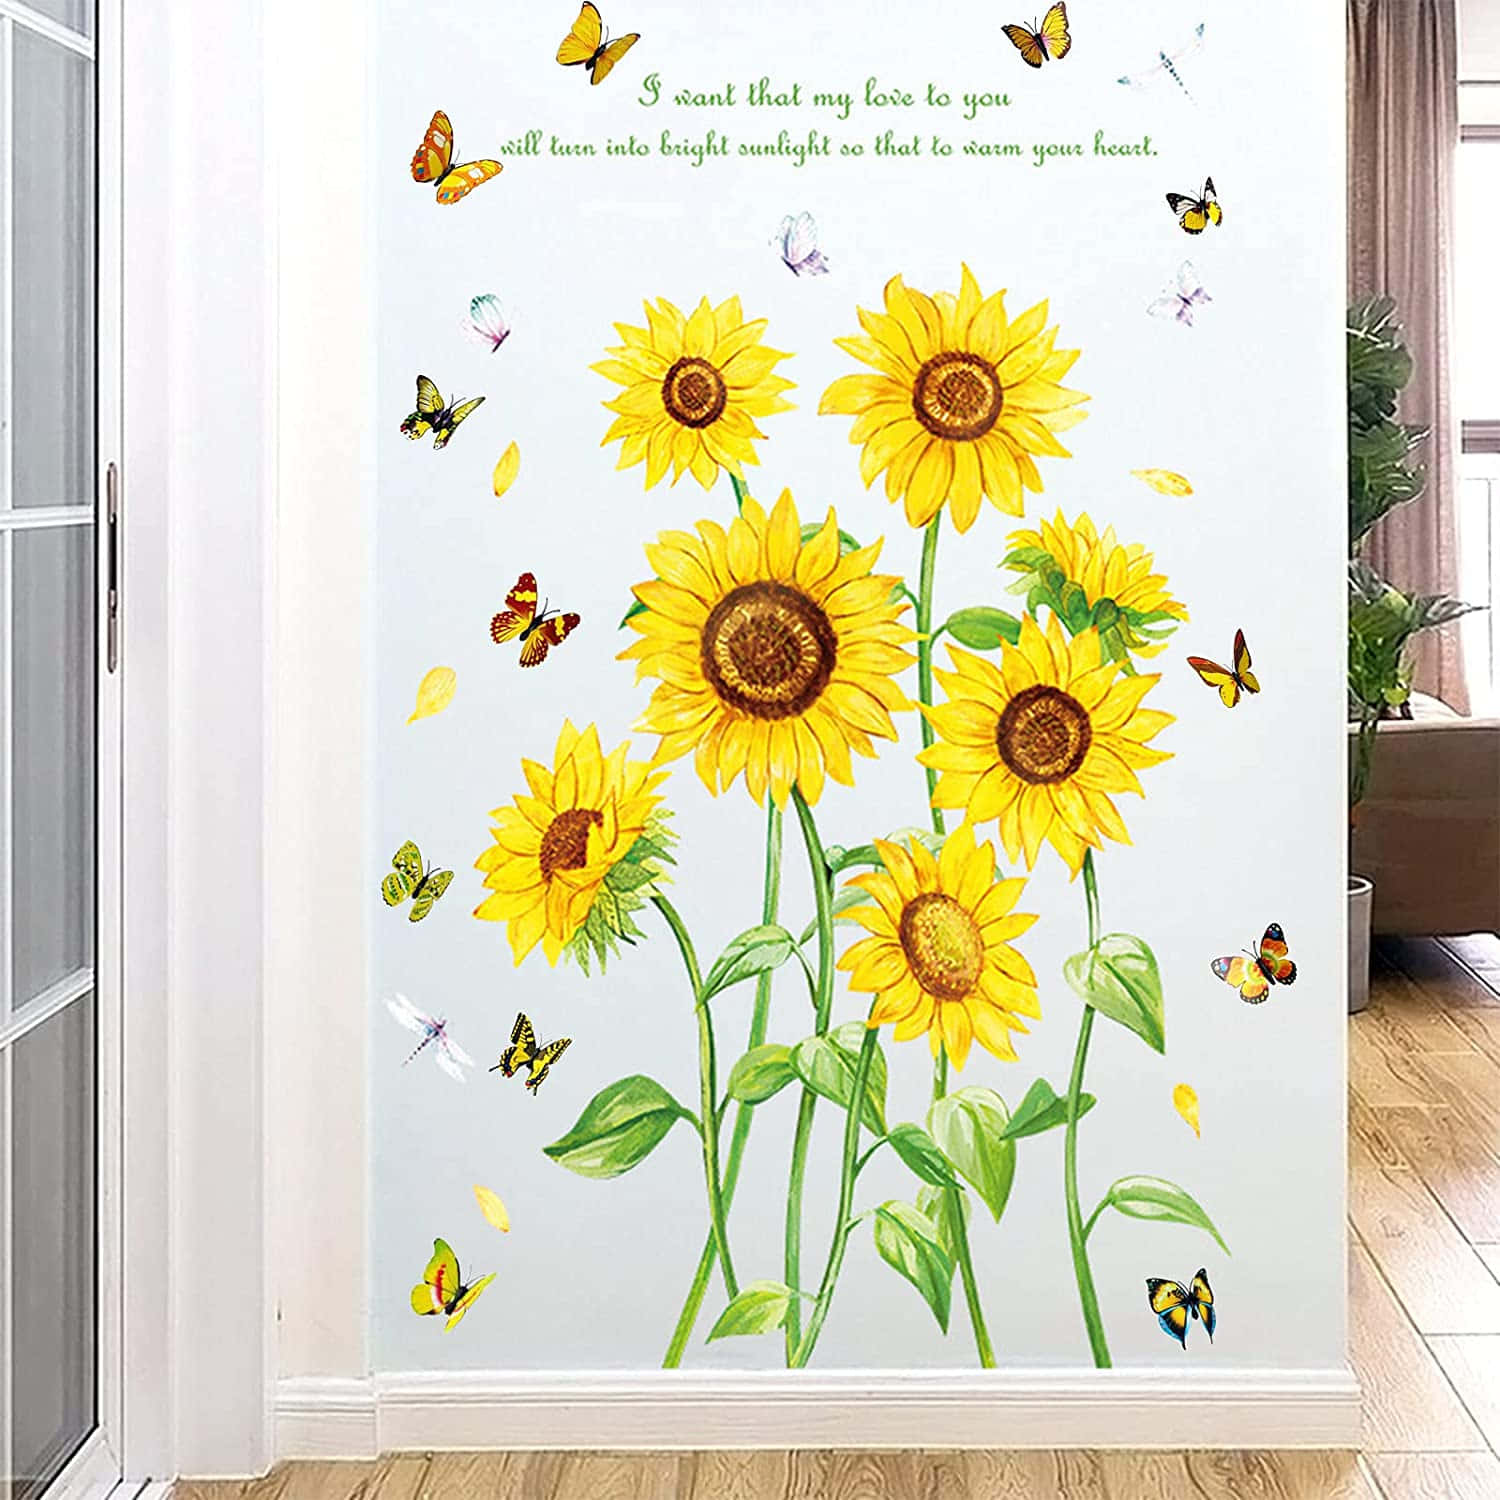 Einraum Mit Sonnenblumen Und Schmetterlingen An Der Wand.